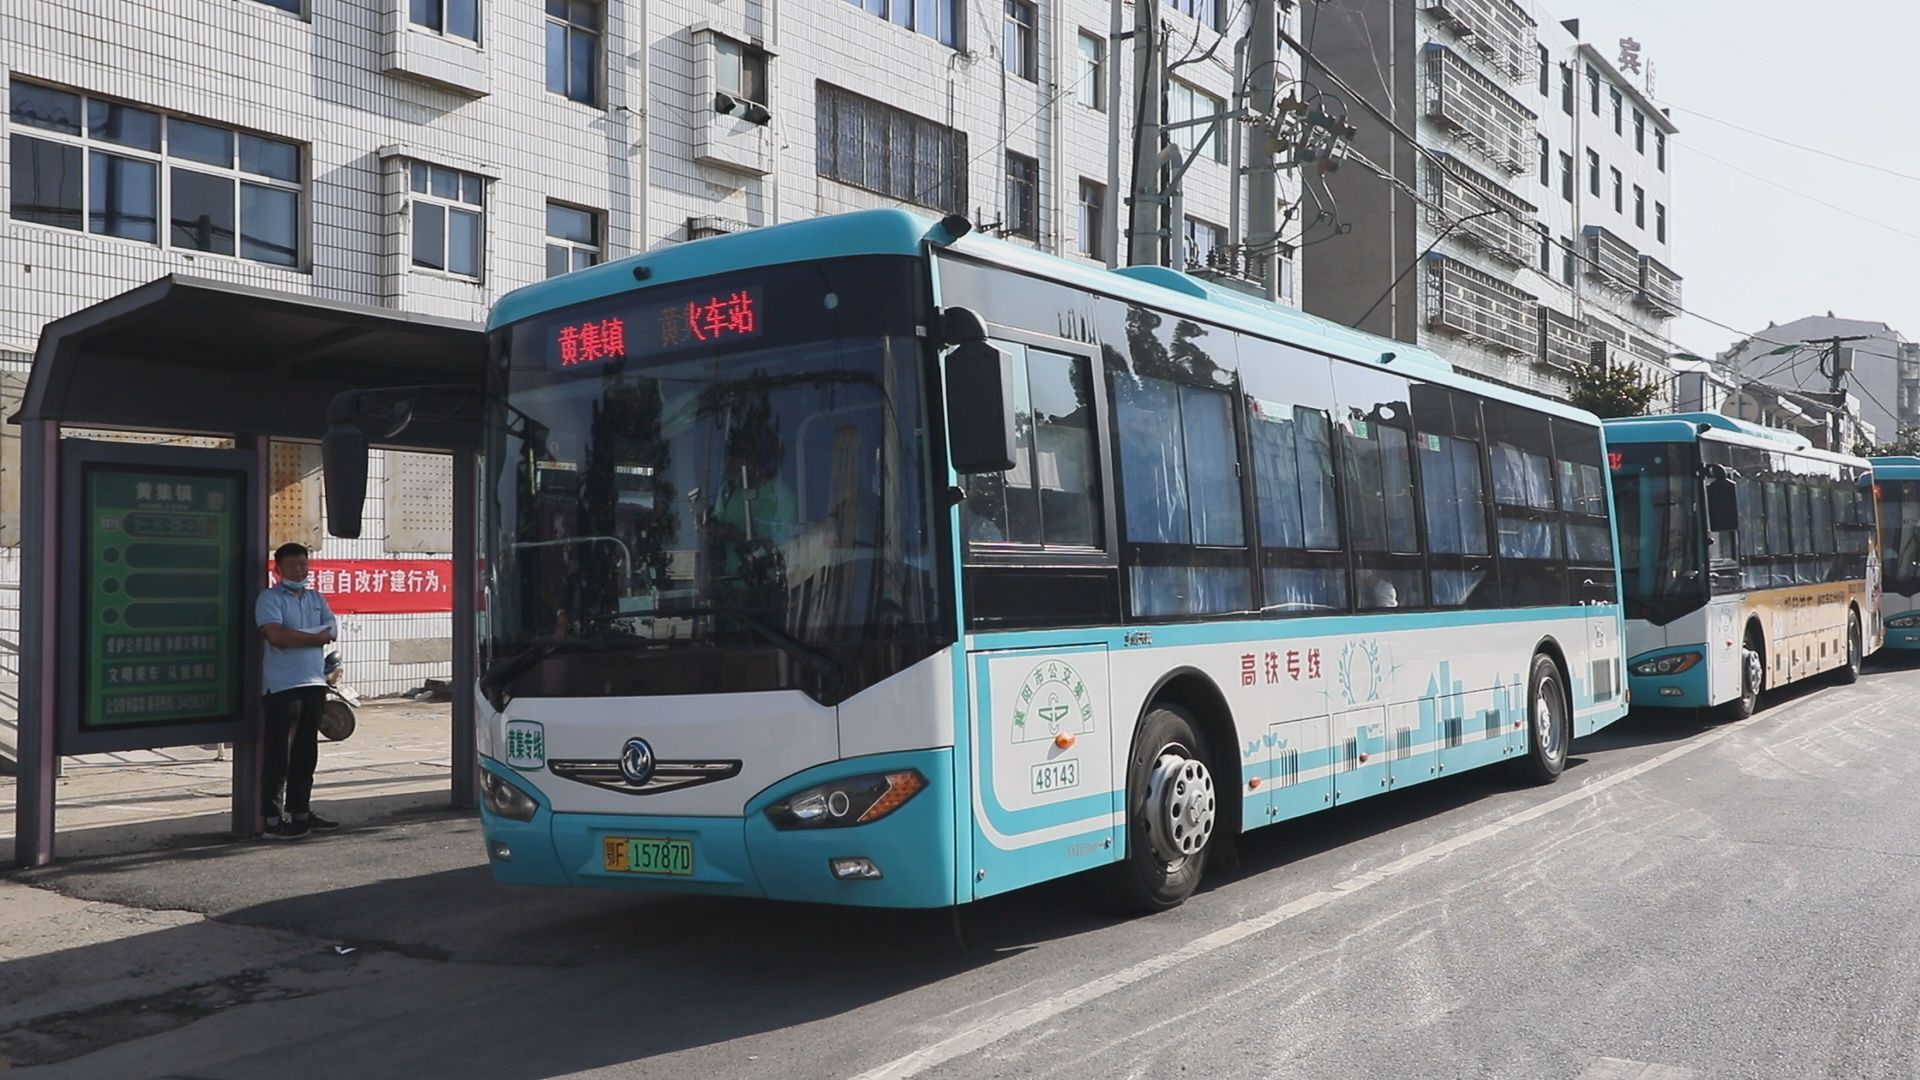 襄州:打通最后一公里 公交开进村子里